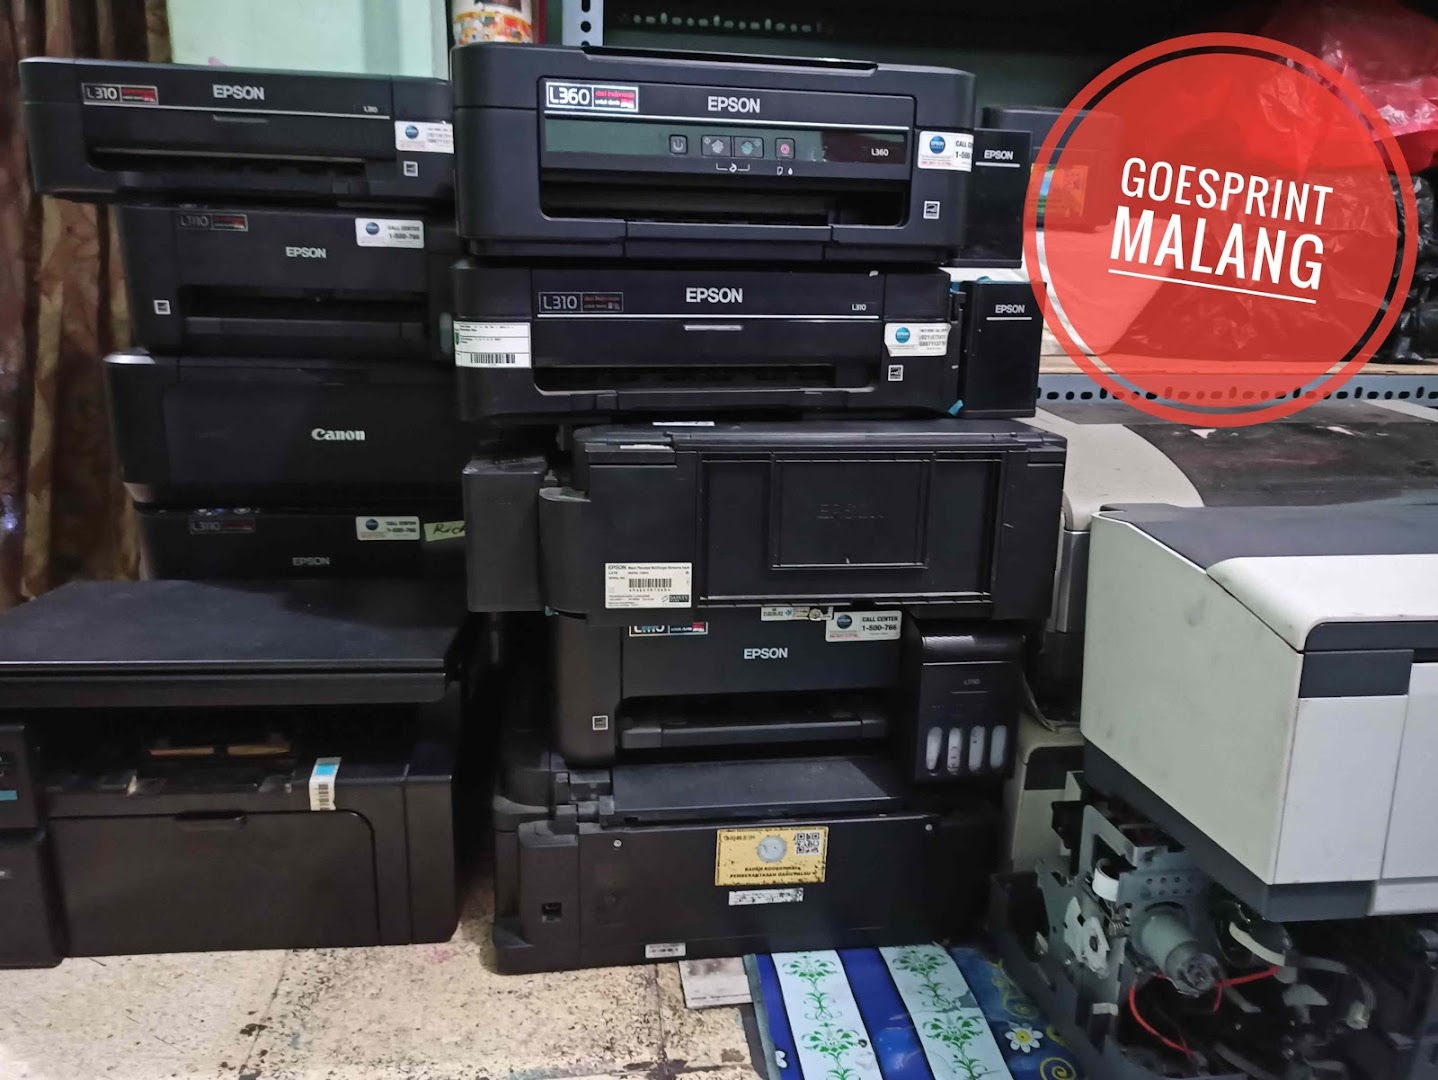 Gambar Goes Print - Service Printer Malang